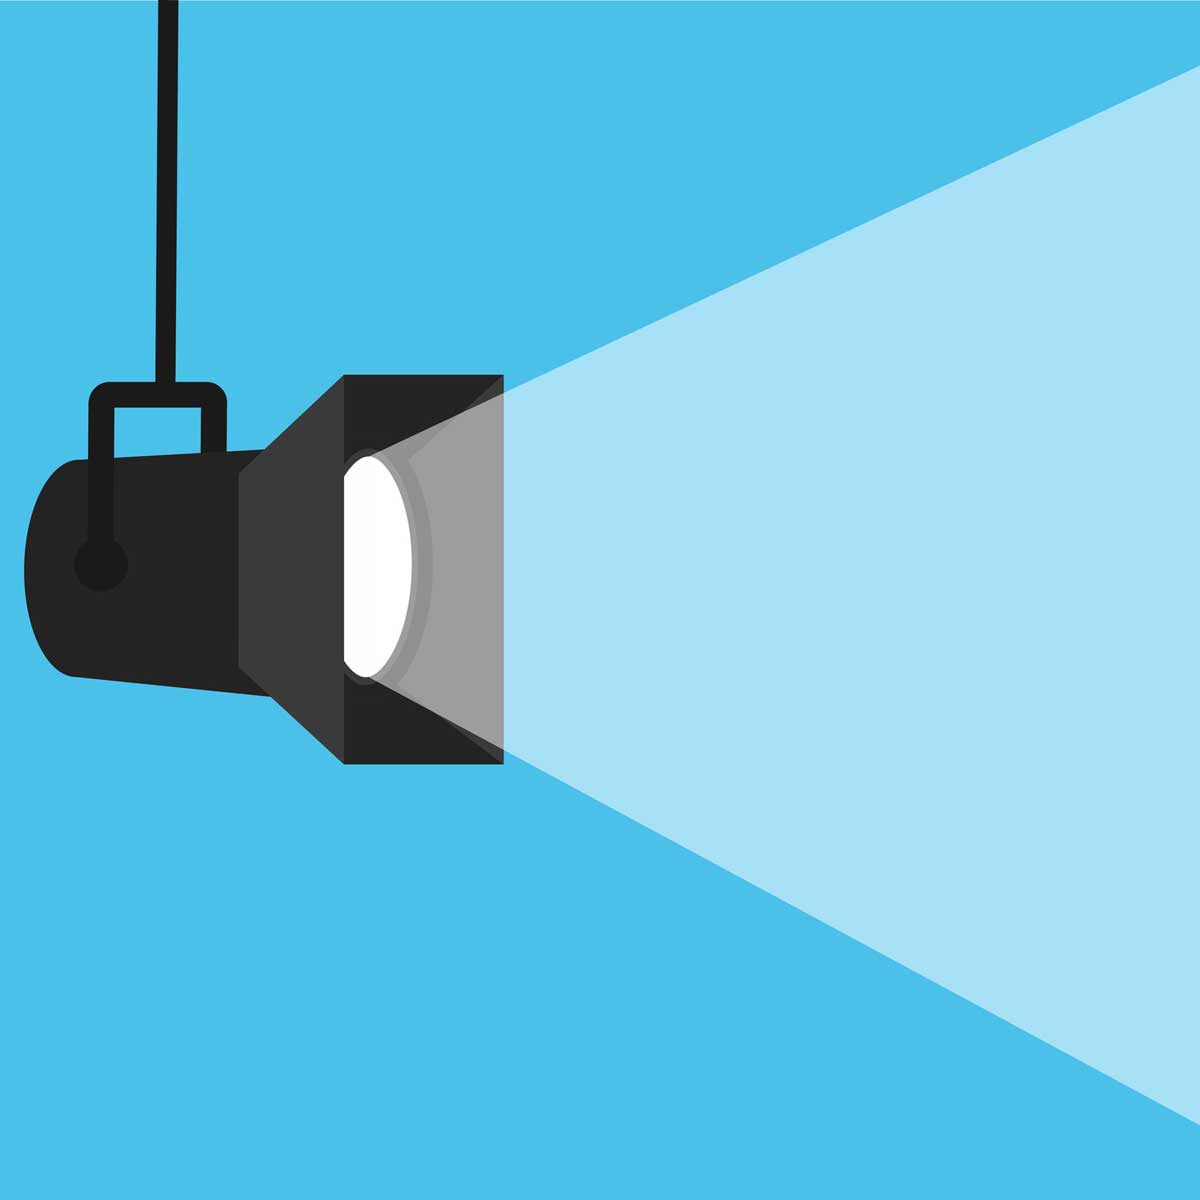 Banner-spotlight-background.-Vector-illustration. light blue background and a spotlight shining from the left